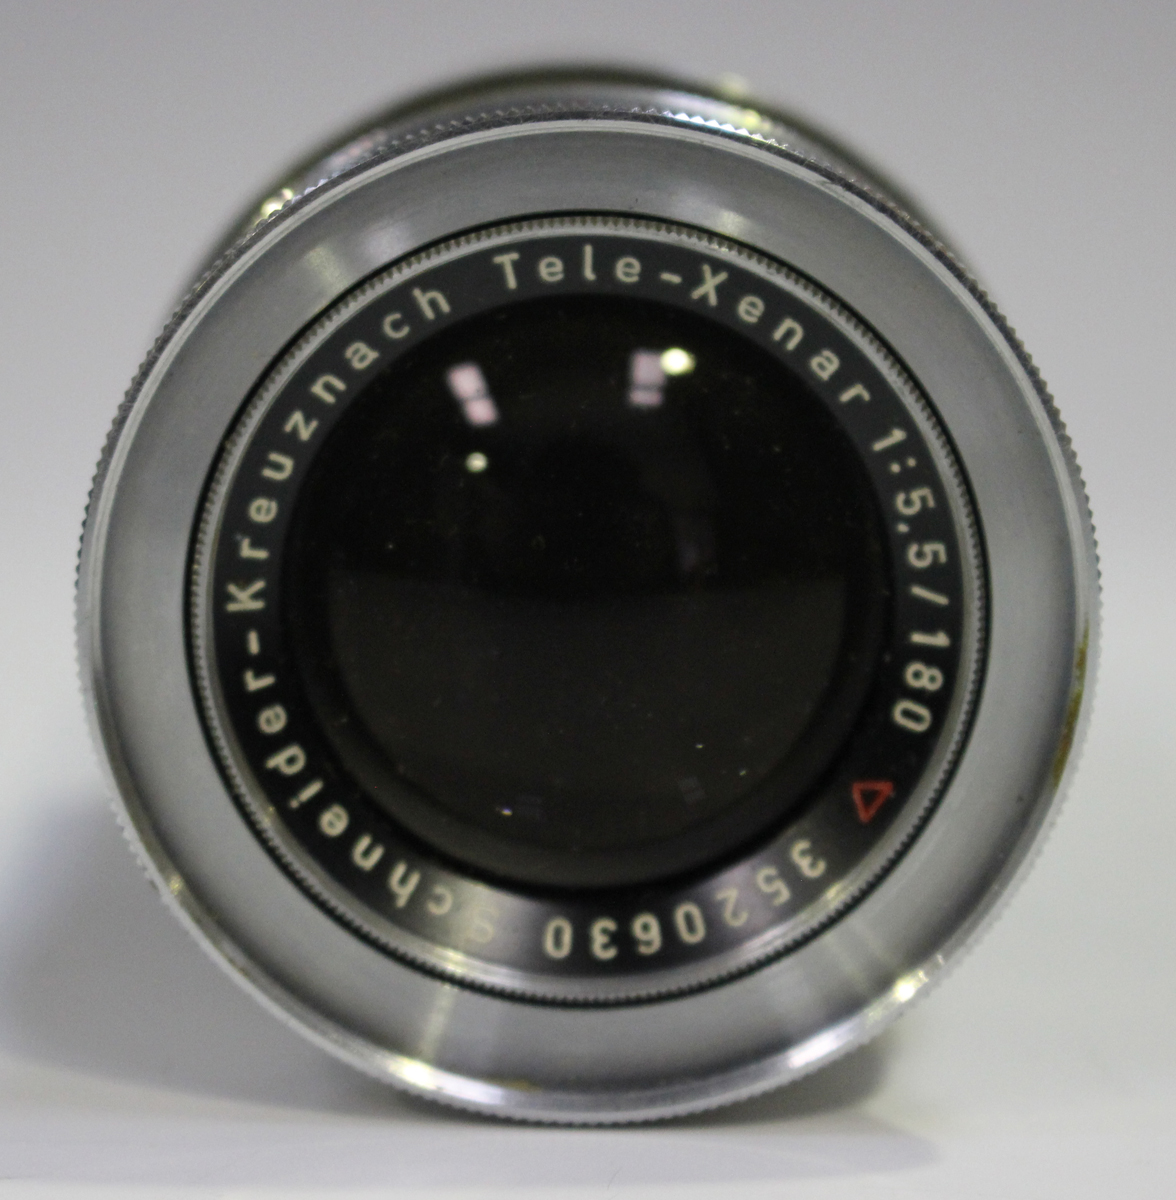 A group of camera lenses, comprising a Schneider-Kreuznach Tele-Xenar 1:5.5/180 lens, No. 3520630, a - Image 5 of 13